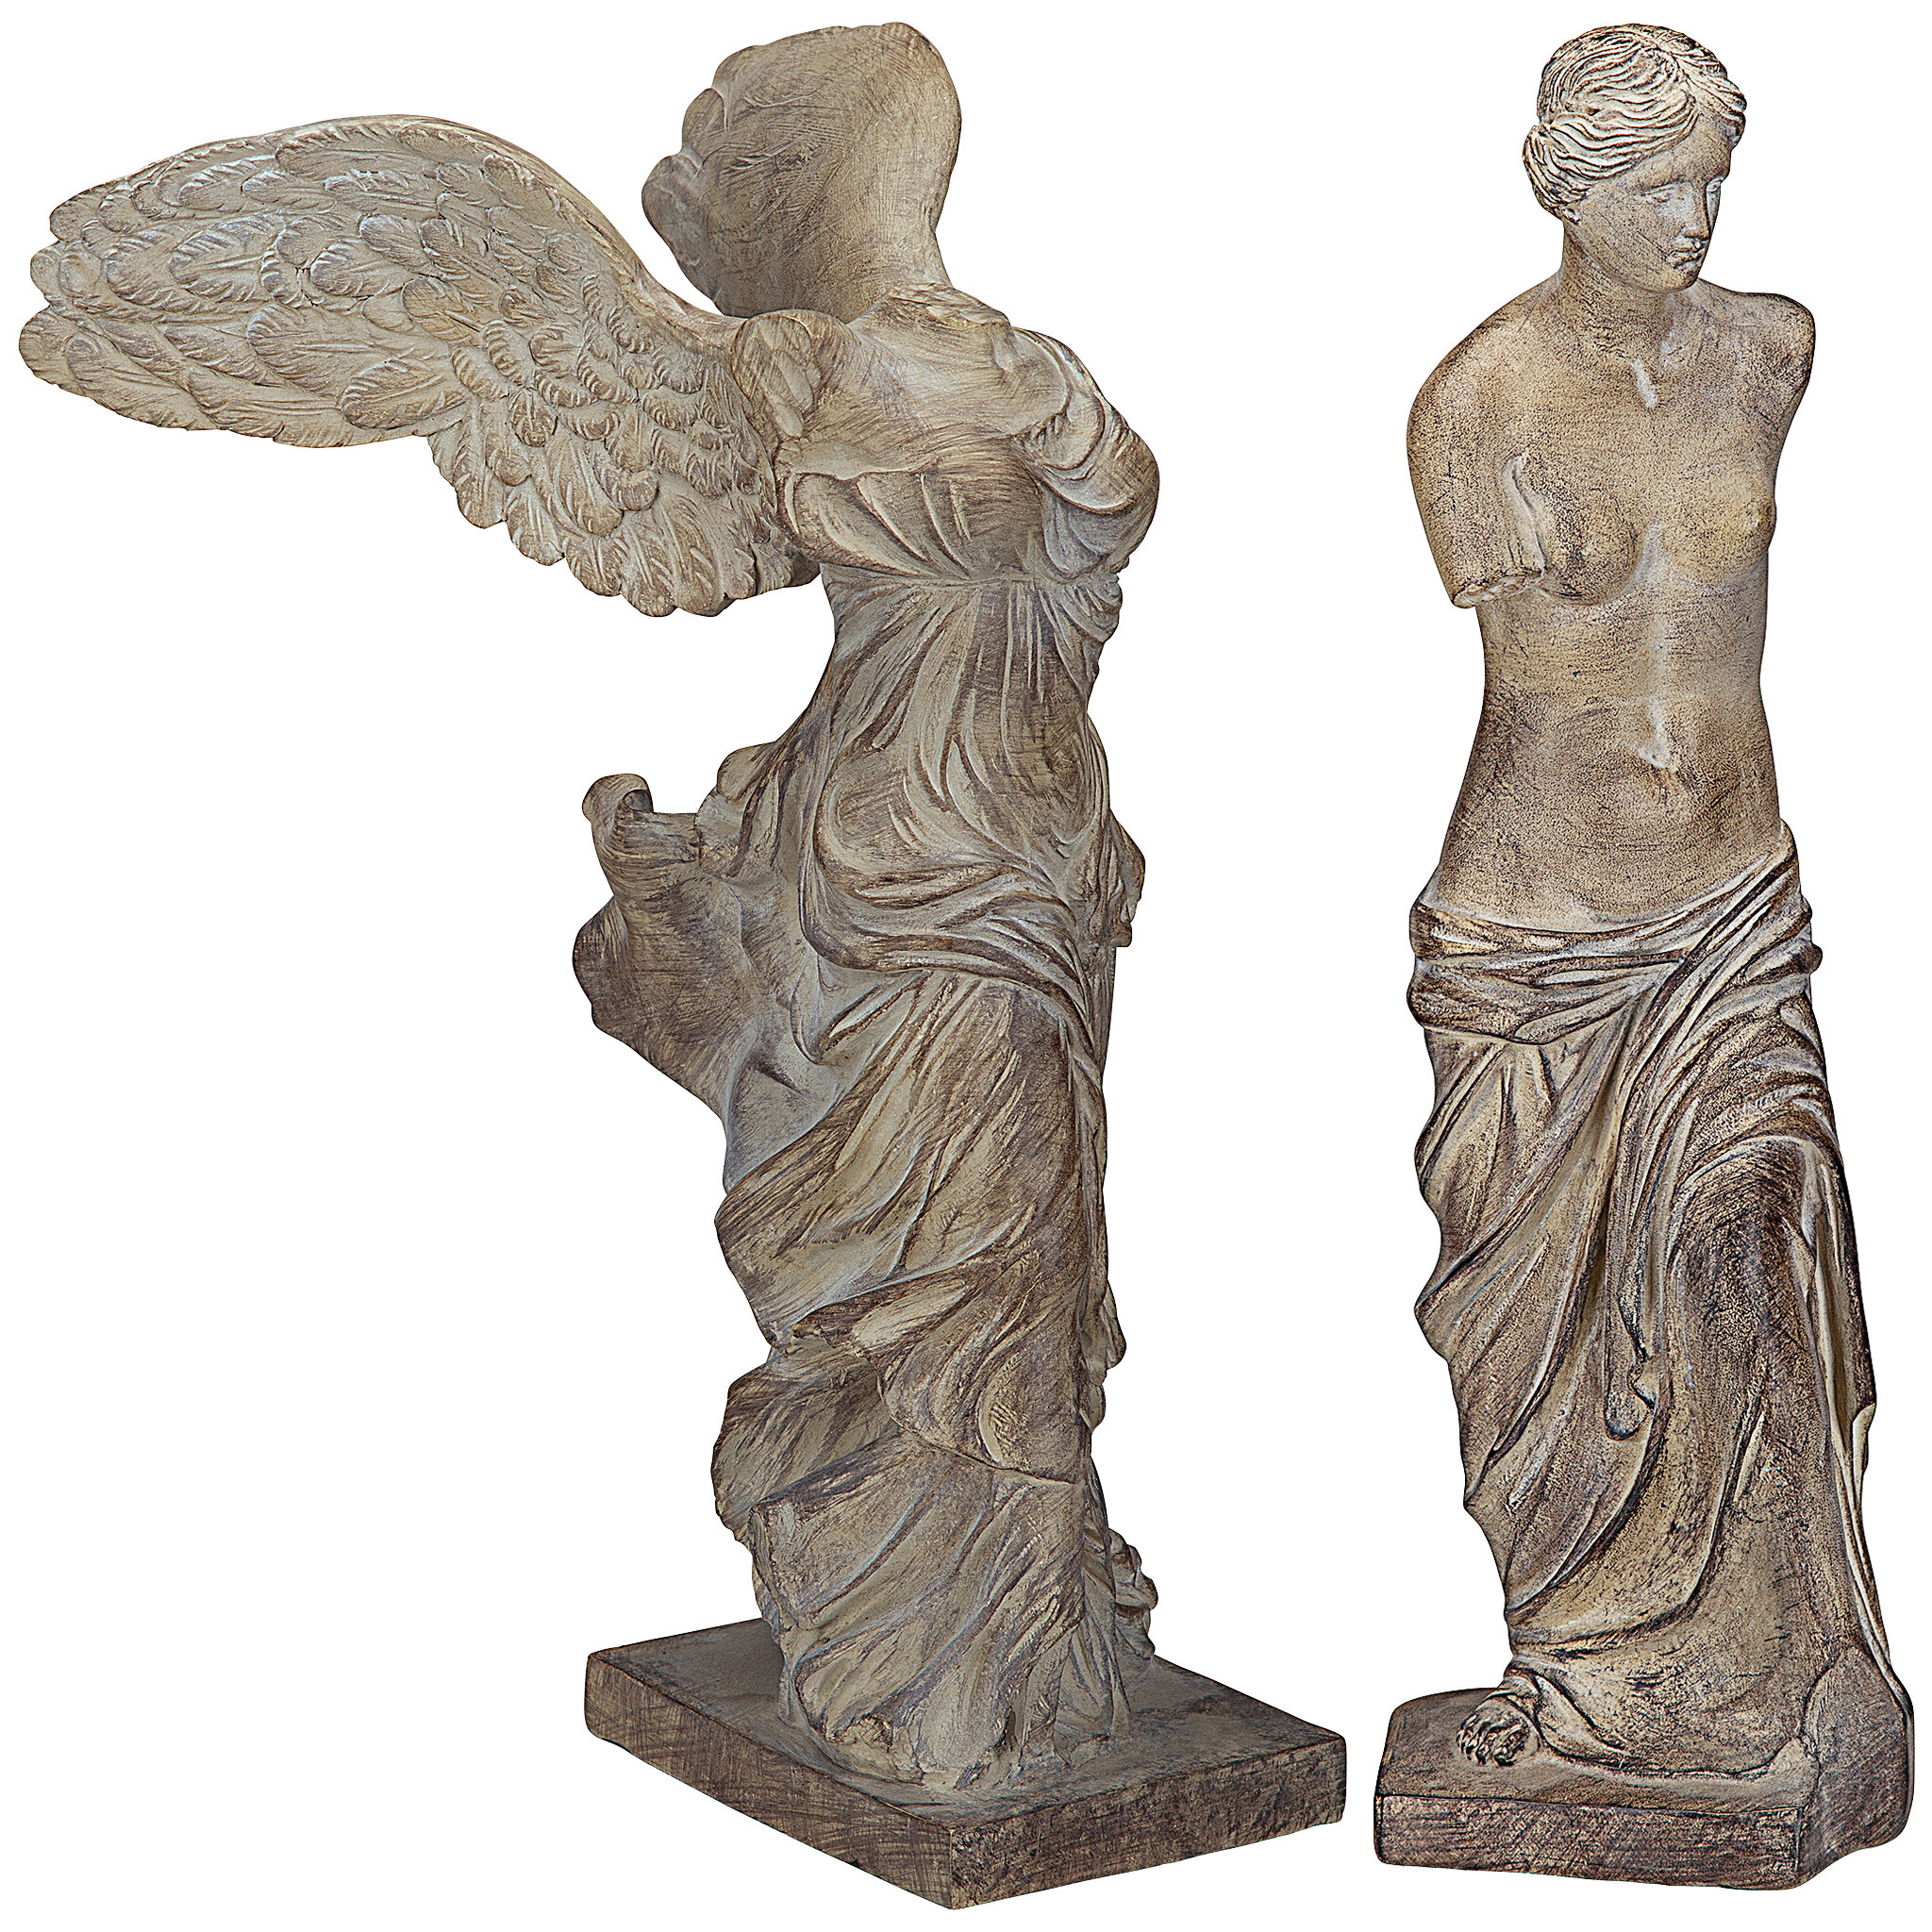 Goddess Statues Goddess Sculptures Hand-made Sculpture Art